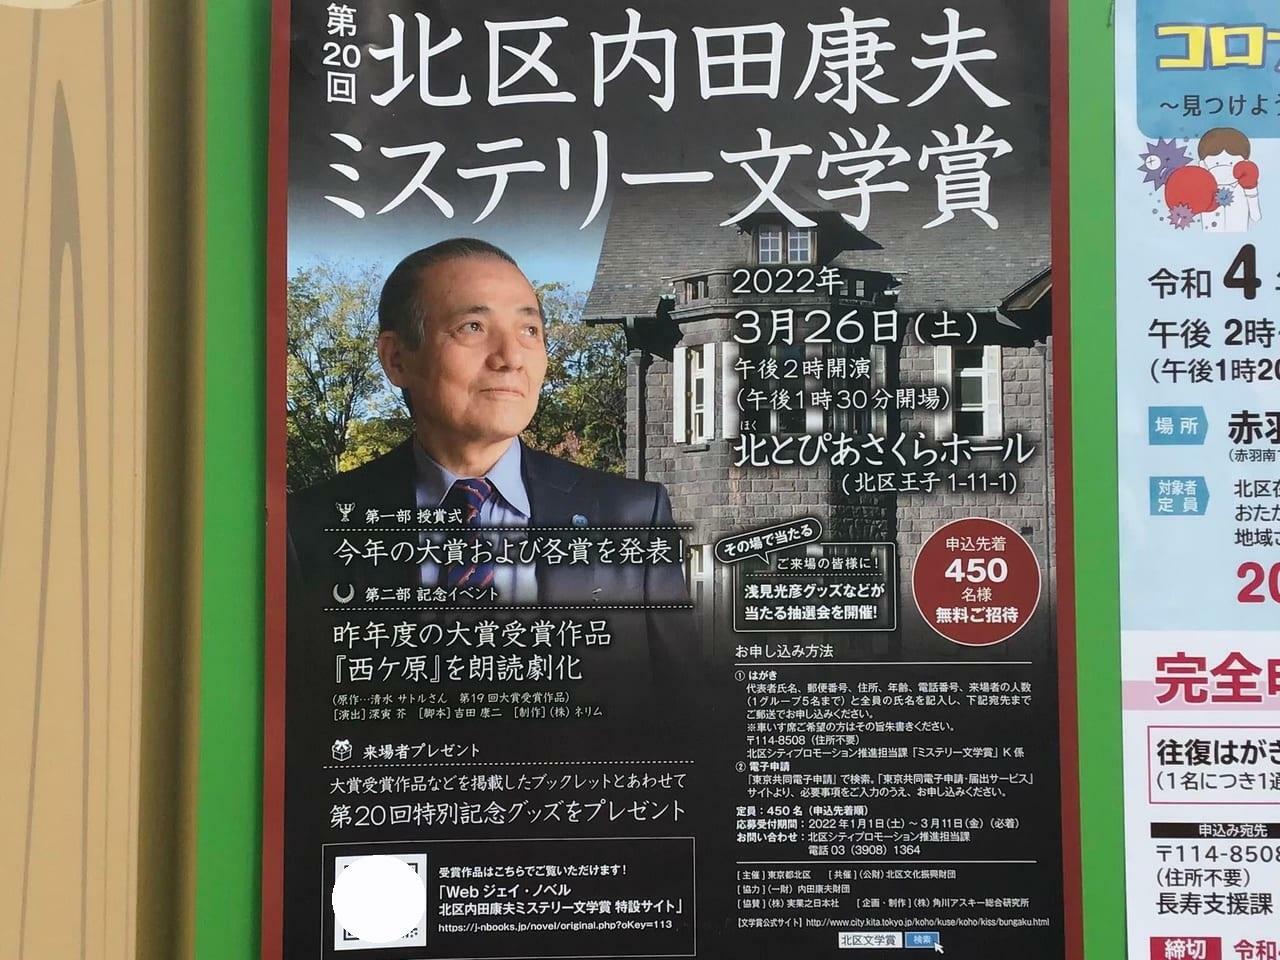 ※参考：第20回「北区内田康夫ミステリー文学賞」授賞式・記念イベントのポスター